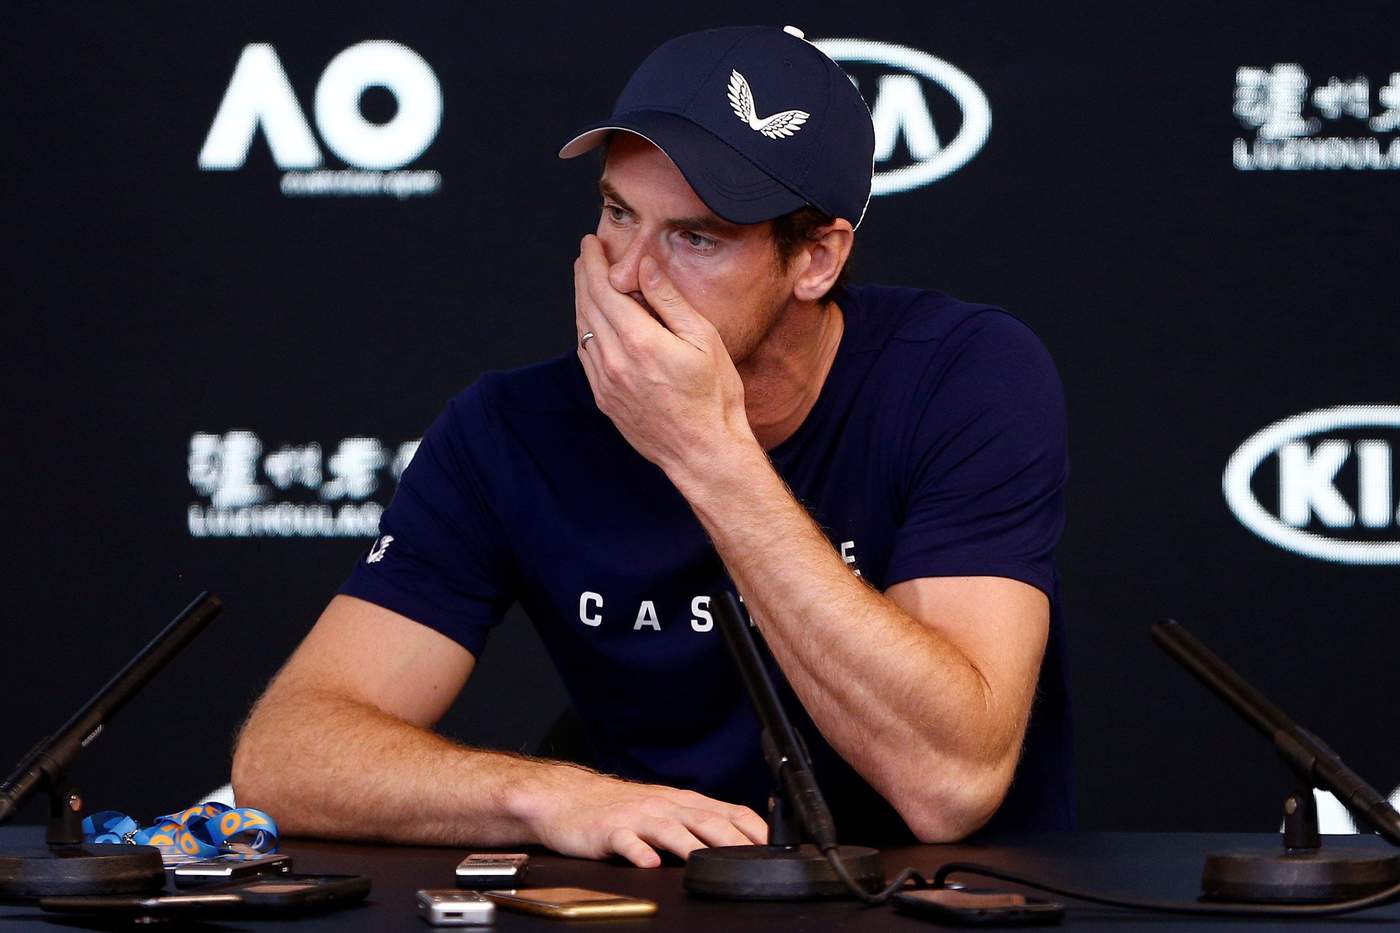 En llanto, Andy Murray explica lesión y su retiro